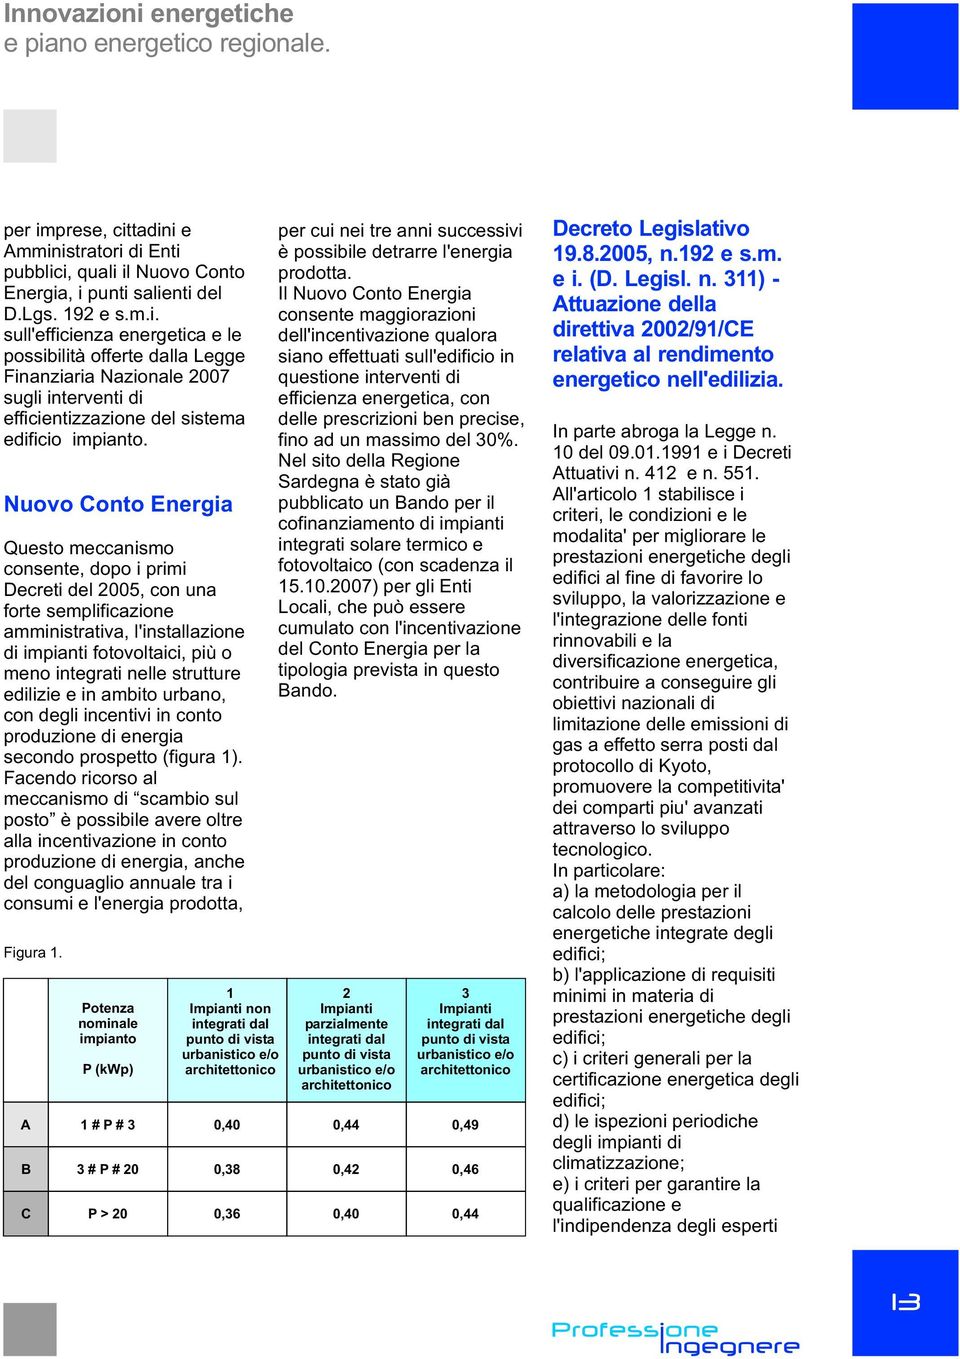 edilizie e in mbito urbno, con degli incentivi in conto produzione di energi secondo prospetto (figur 1).